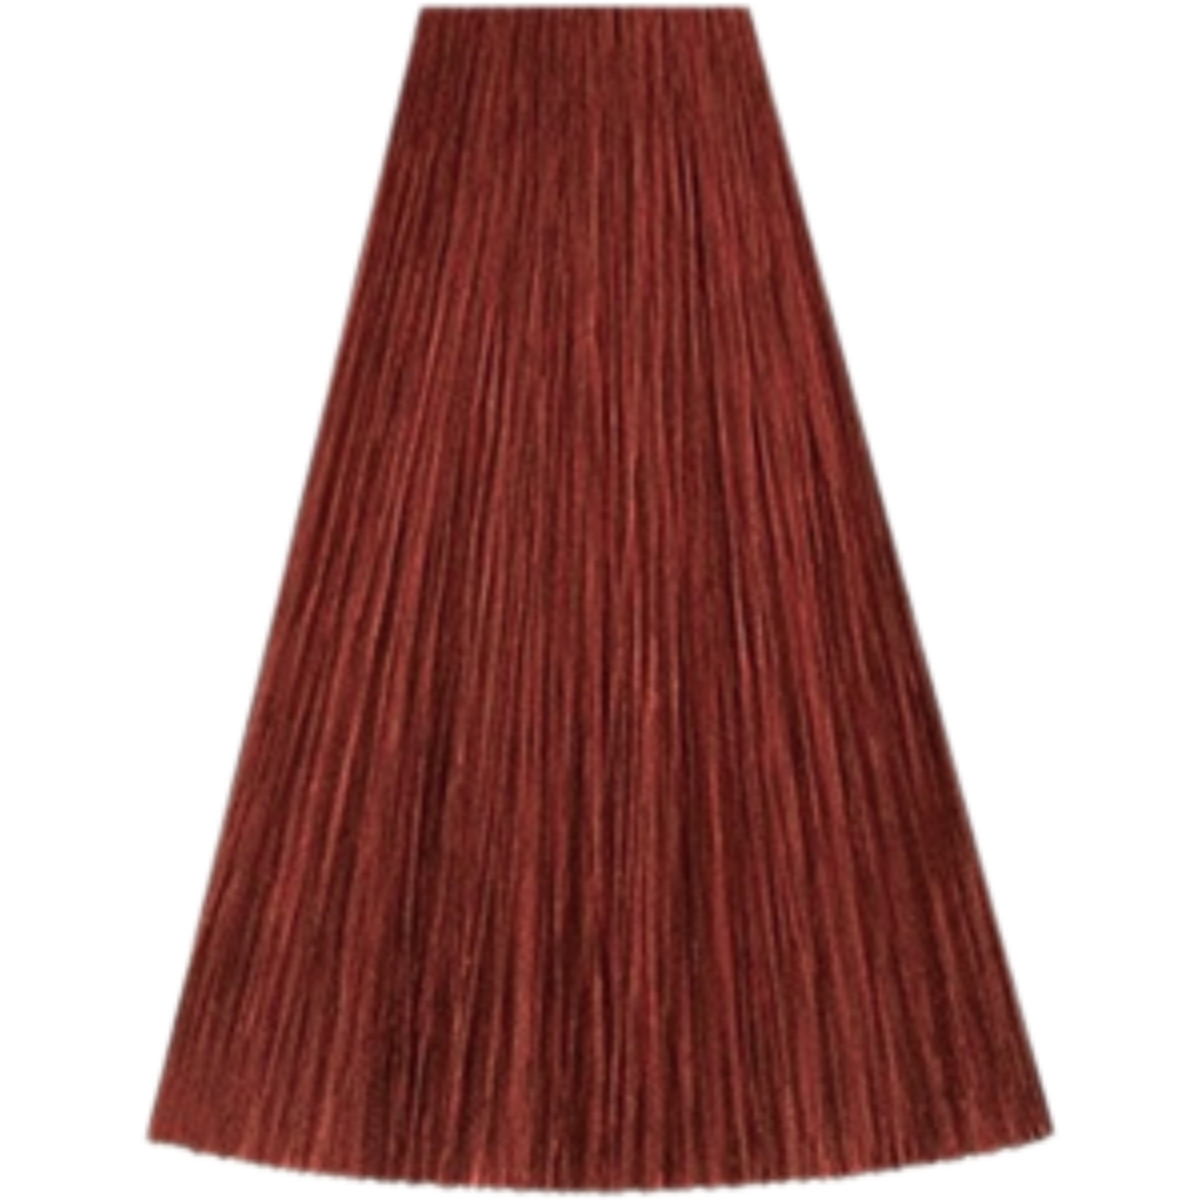 צבע שיער גוון 8/45 LIGHT BLONDE RED MAHOGANY קאדוס KADUS צבע לשיער 60 גרם